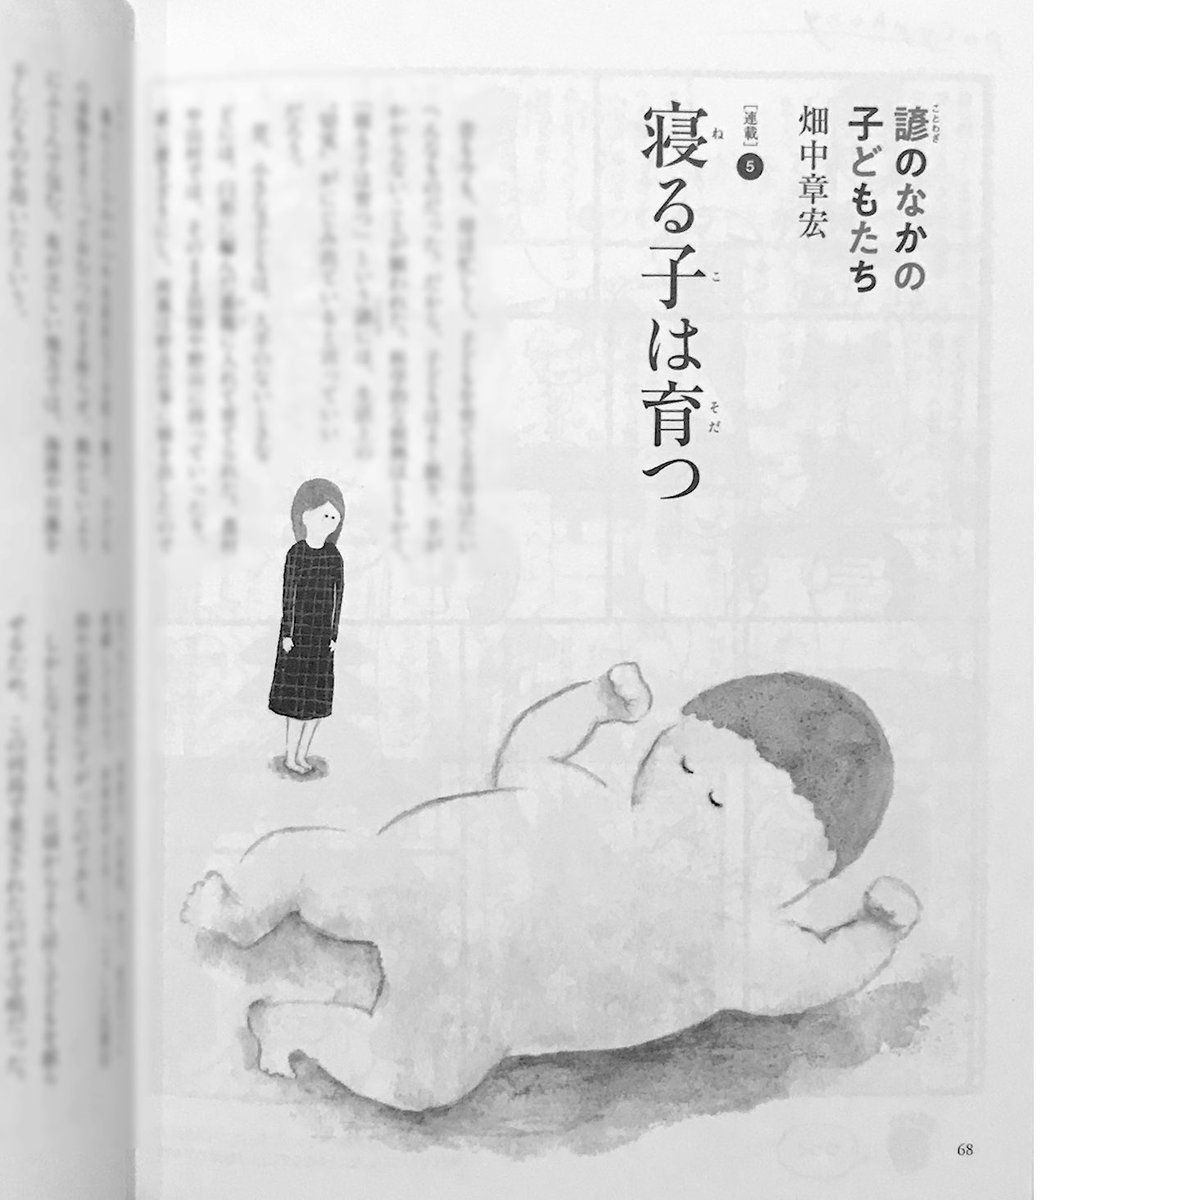 「母の友」8月号、畑中章宏さんの連載に挿絵をかかせていただいてます。今月のことわざは「寝る子は育つ」。すやすやと寝て育ちすぎてしまった子を描きました。子を大きくレイアウトしてもらってうれしかったです。 